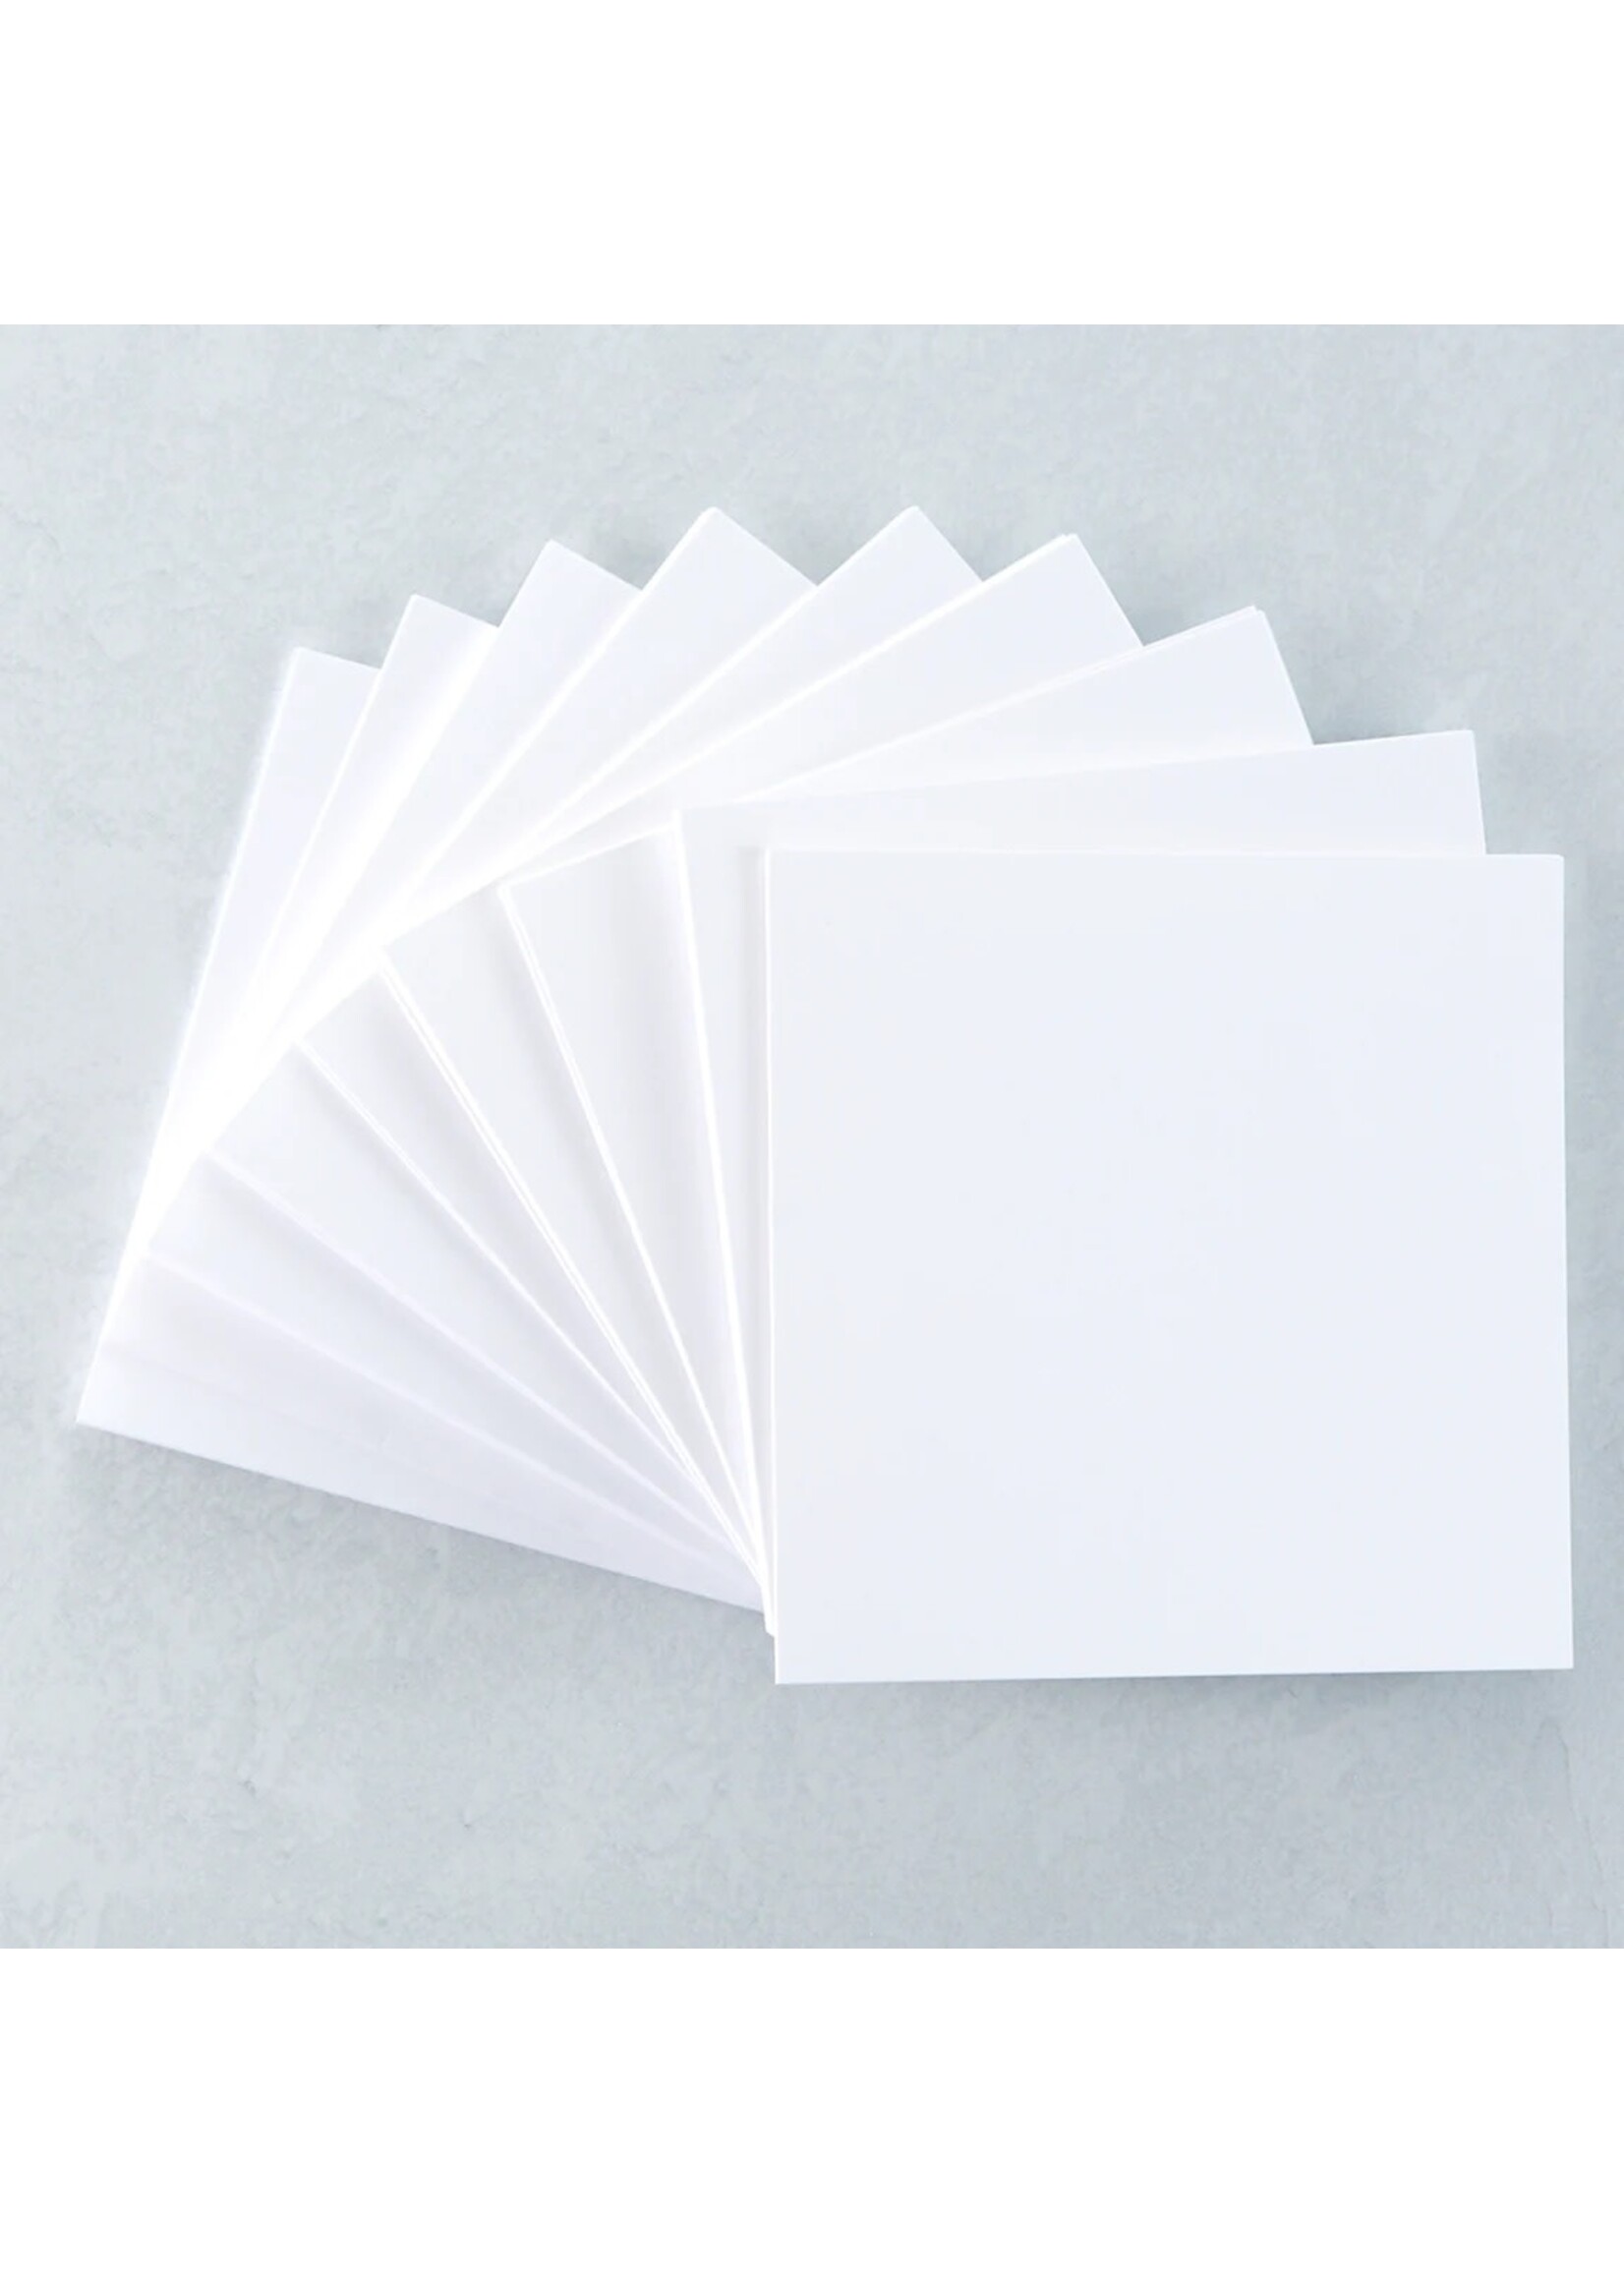 spellbinders Spellbinders Square White Card Bases 5.25''x5.25''